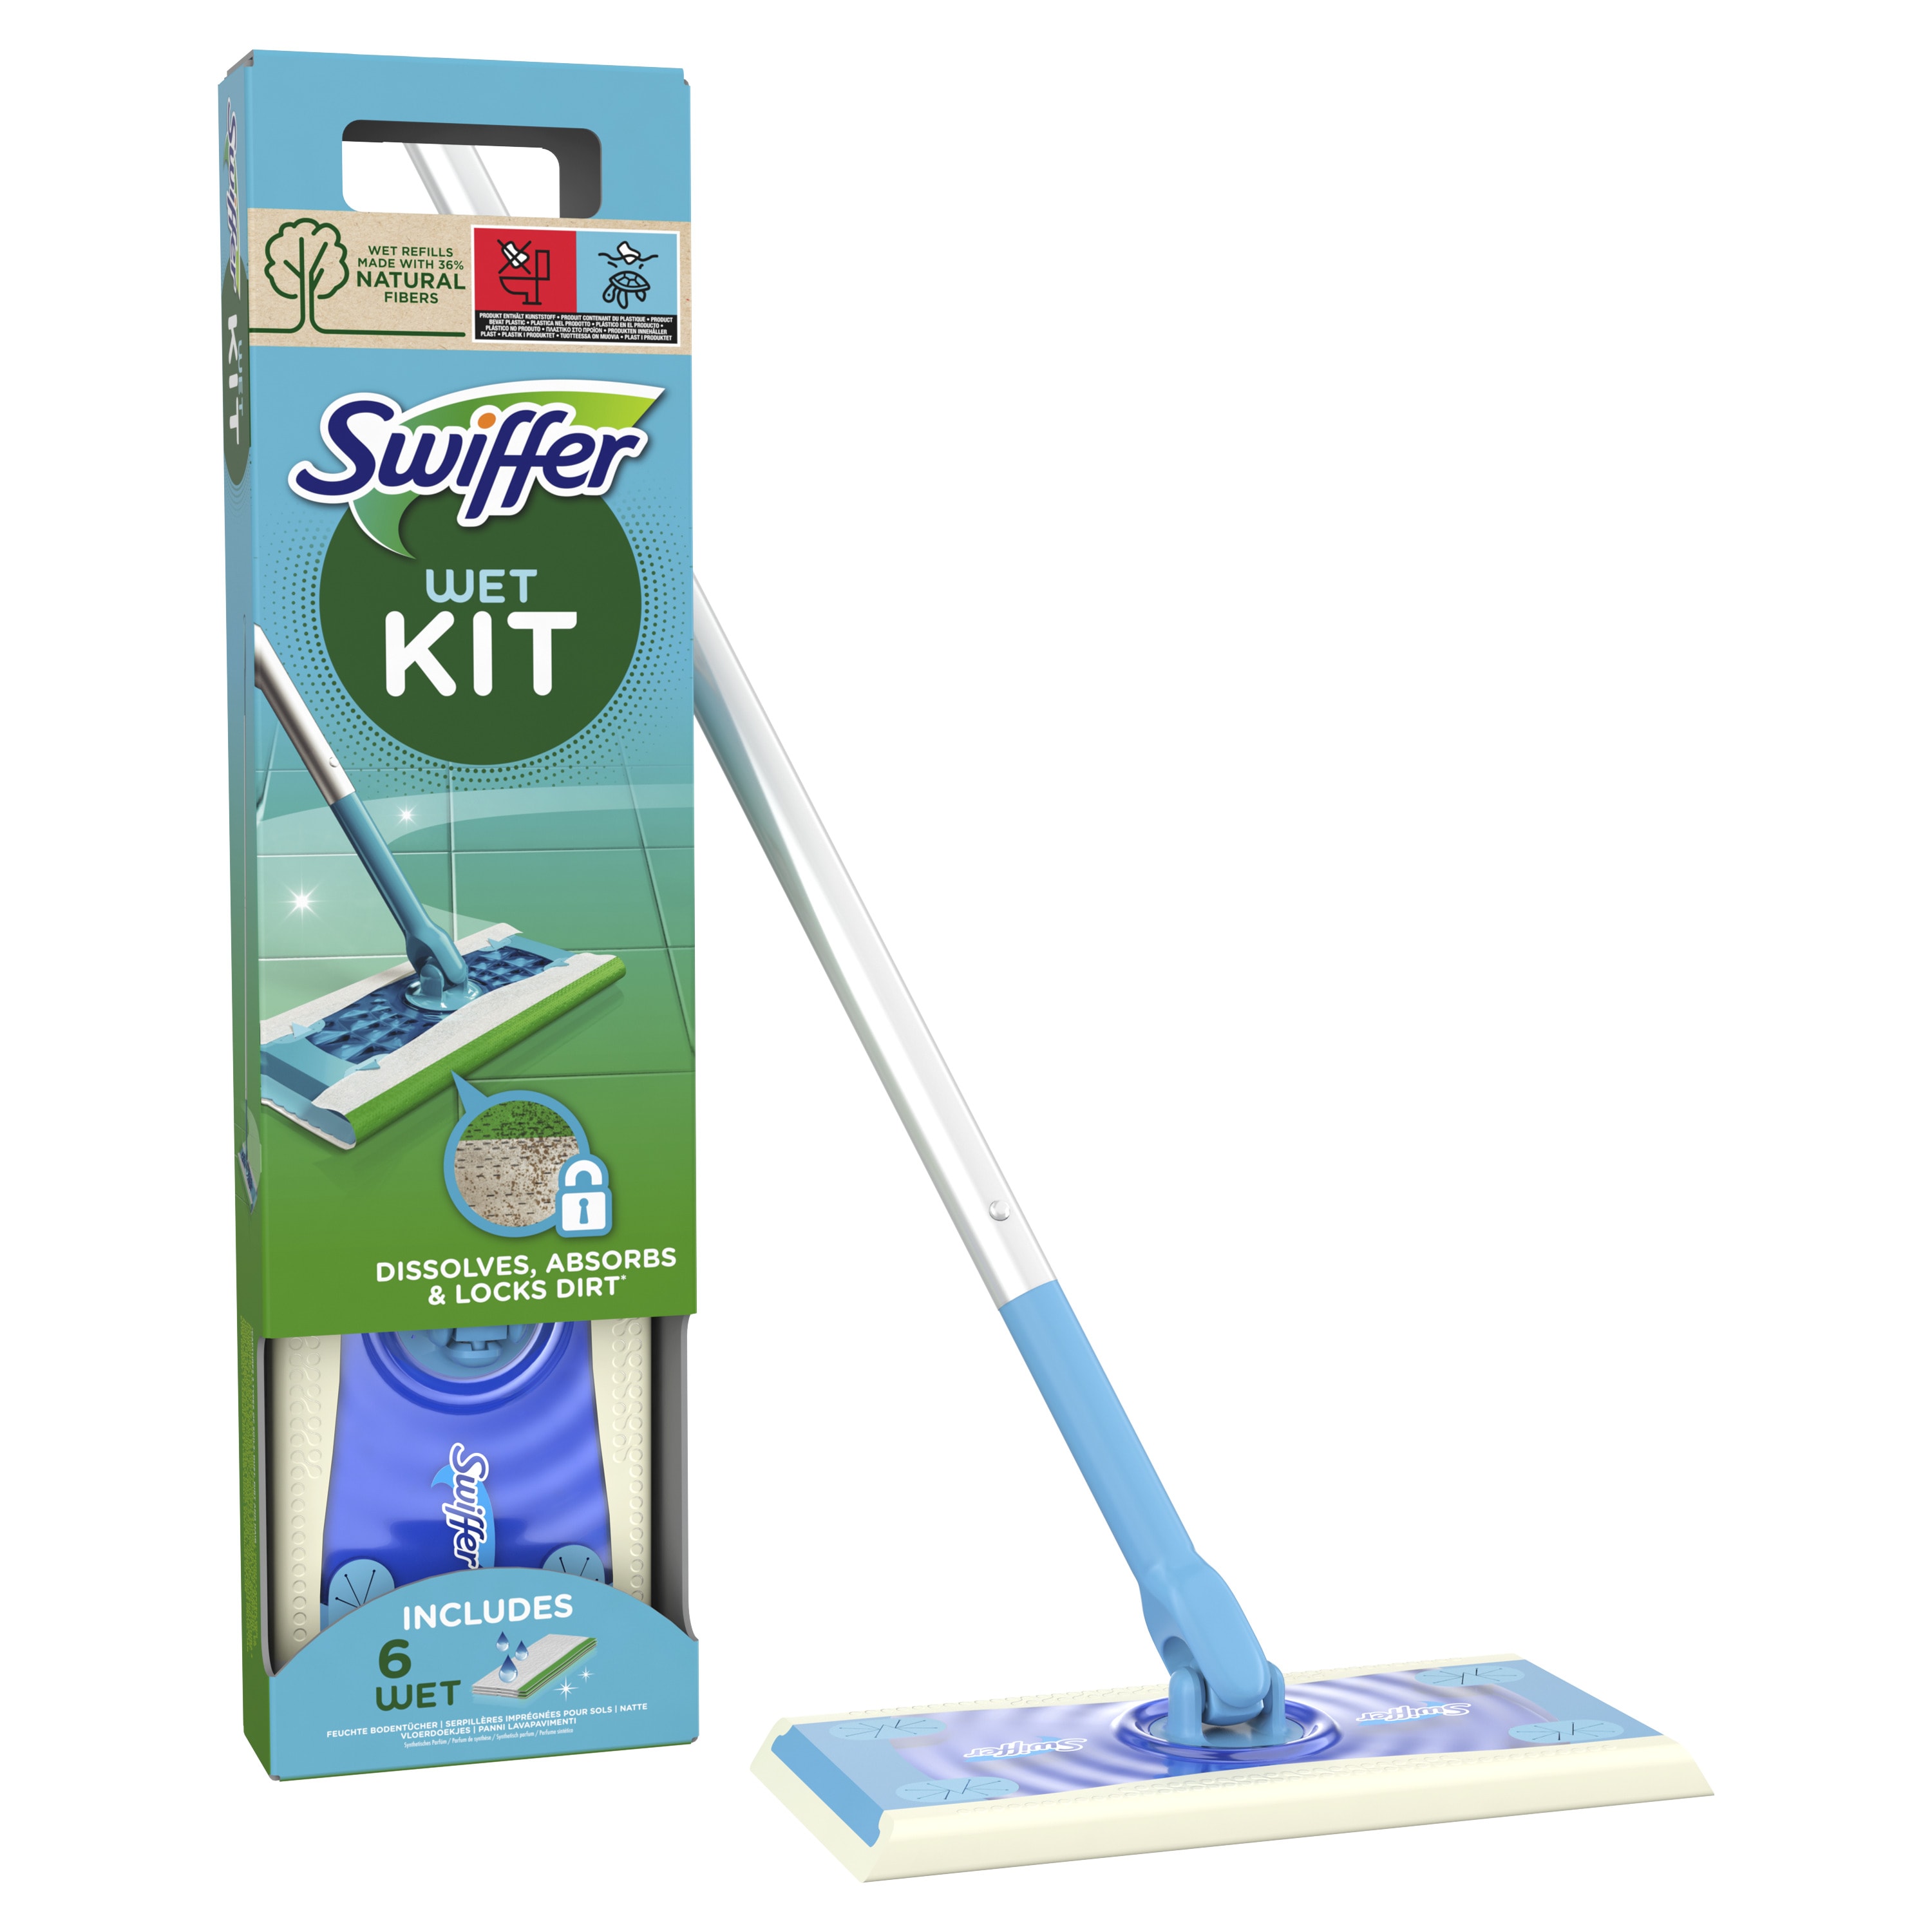 Swiffer attrape-poussière xxl en kit de demarrage, contient